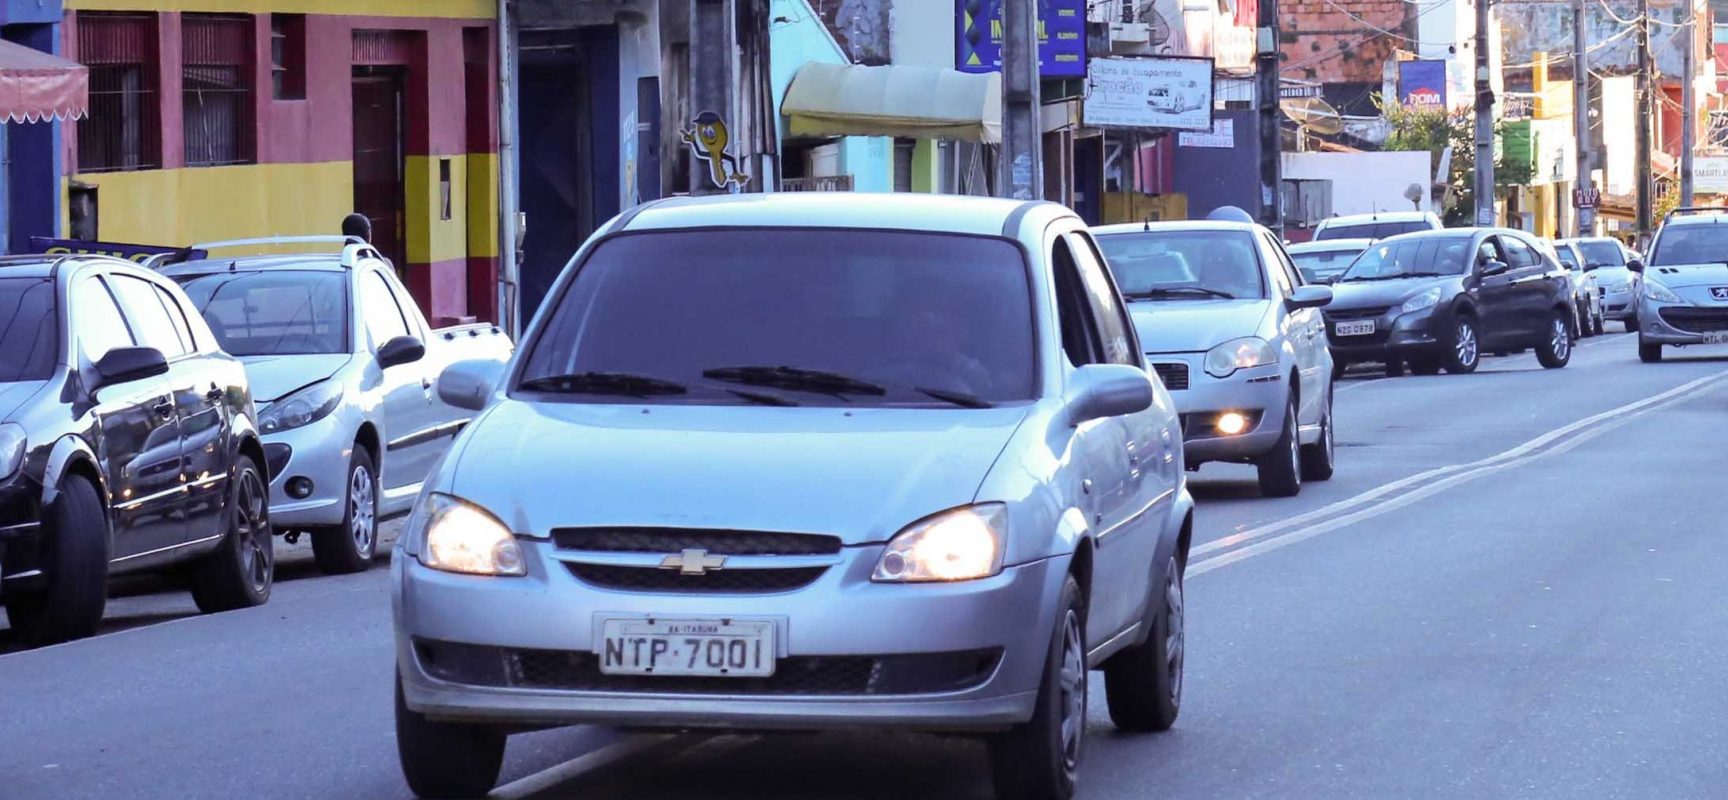 Avenidas Itabuna e Ubaitaba passarão por um reordenamento no trânsito